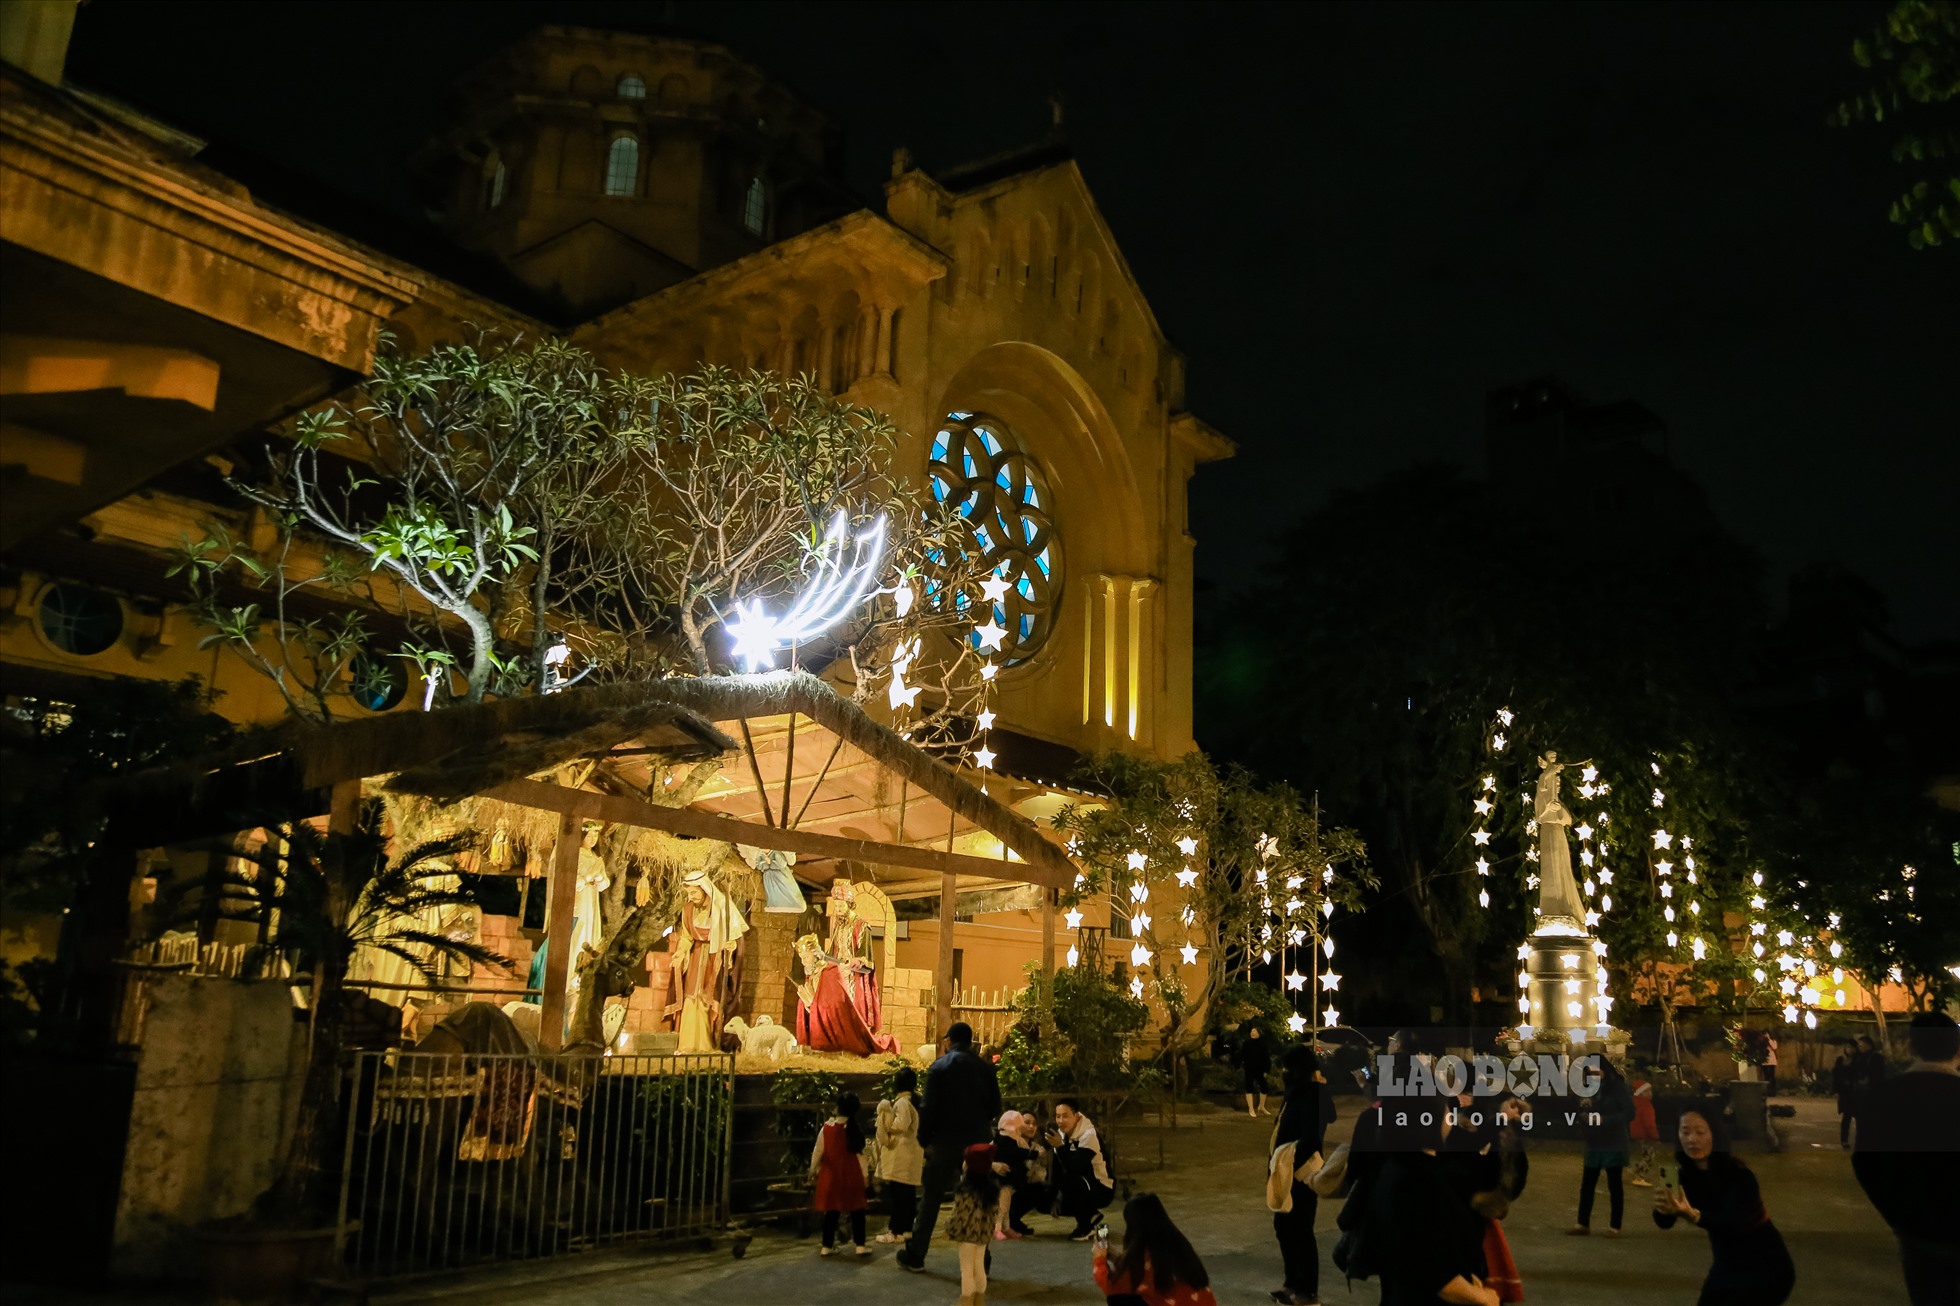 Nhà thờ Cửa Bắc lung linh trong ánh đèn và tràn ngập không khí người dân đón Giáng sinh. (Ảnh: Việt Anh)